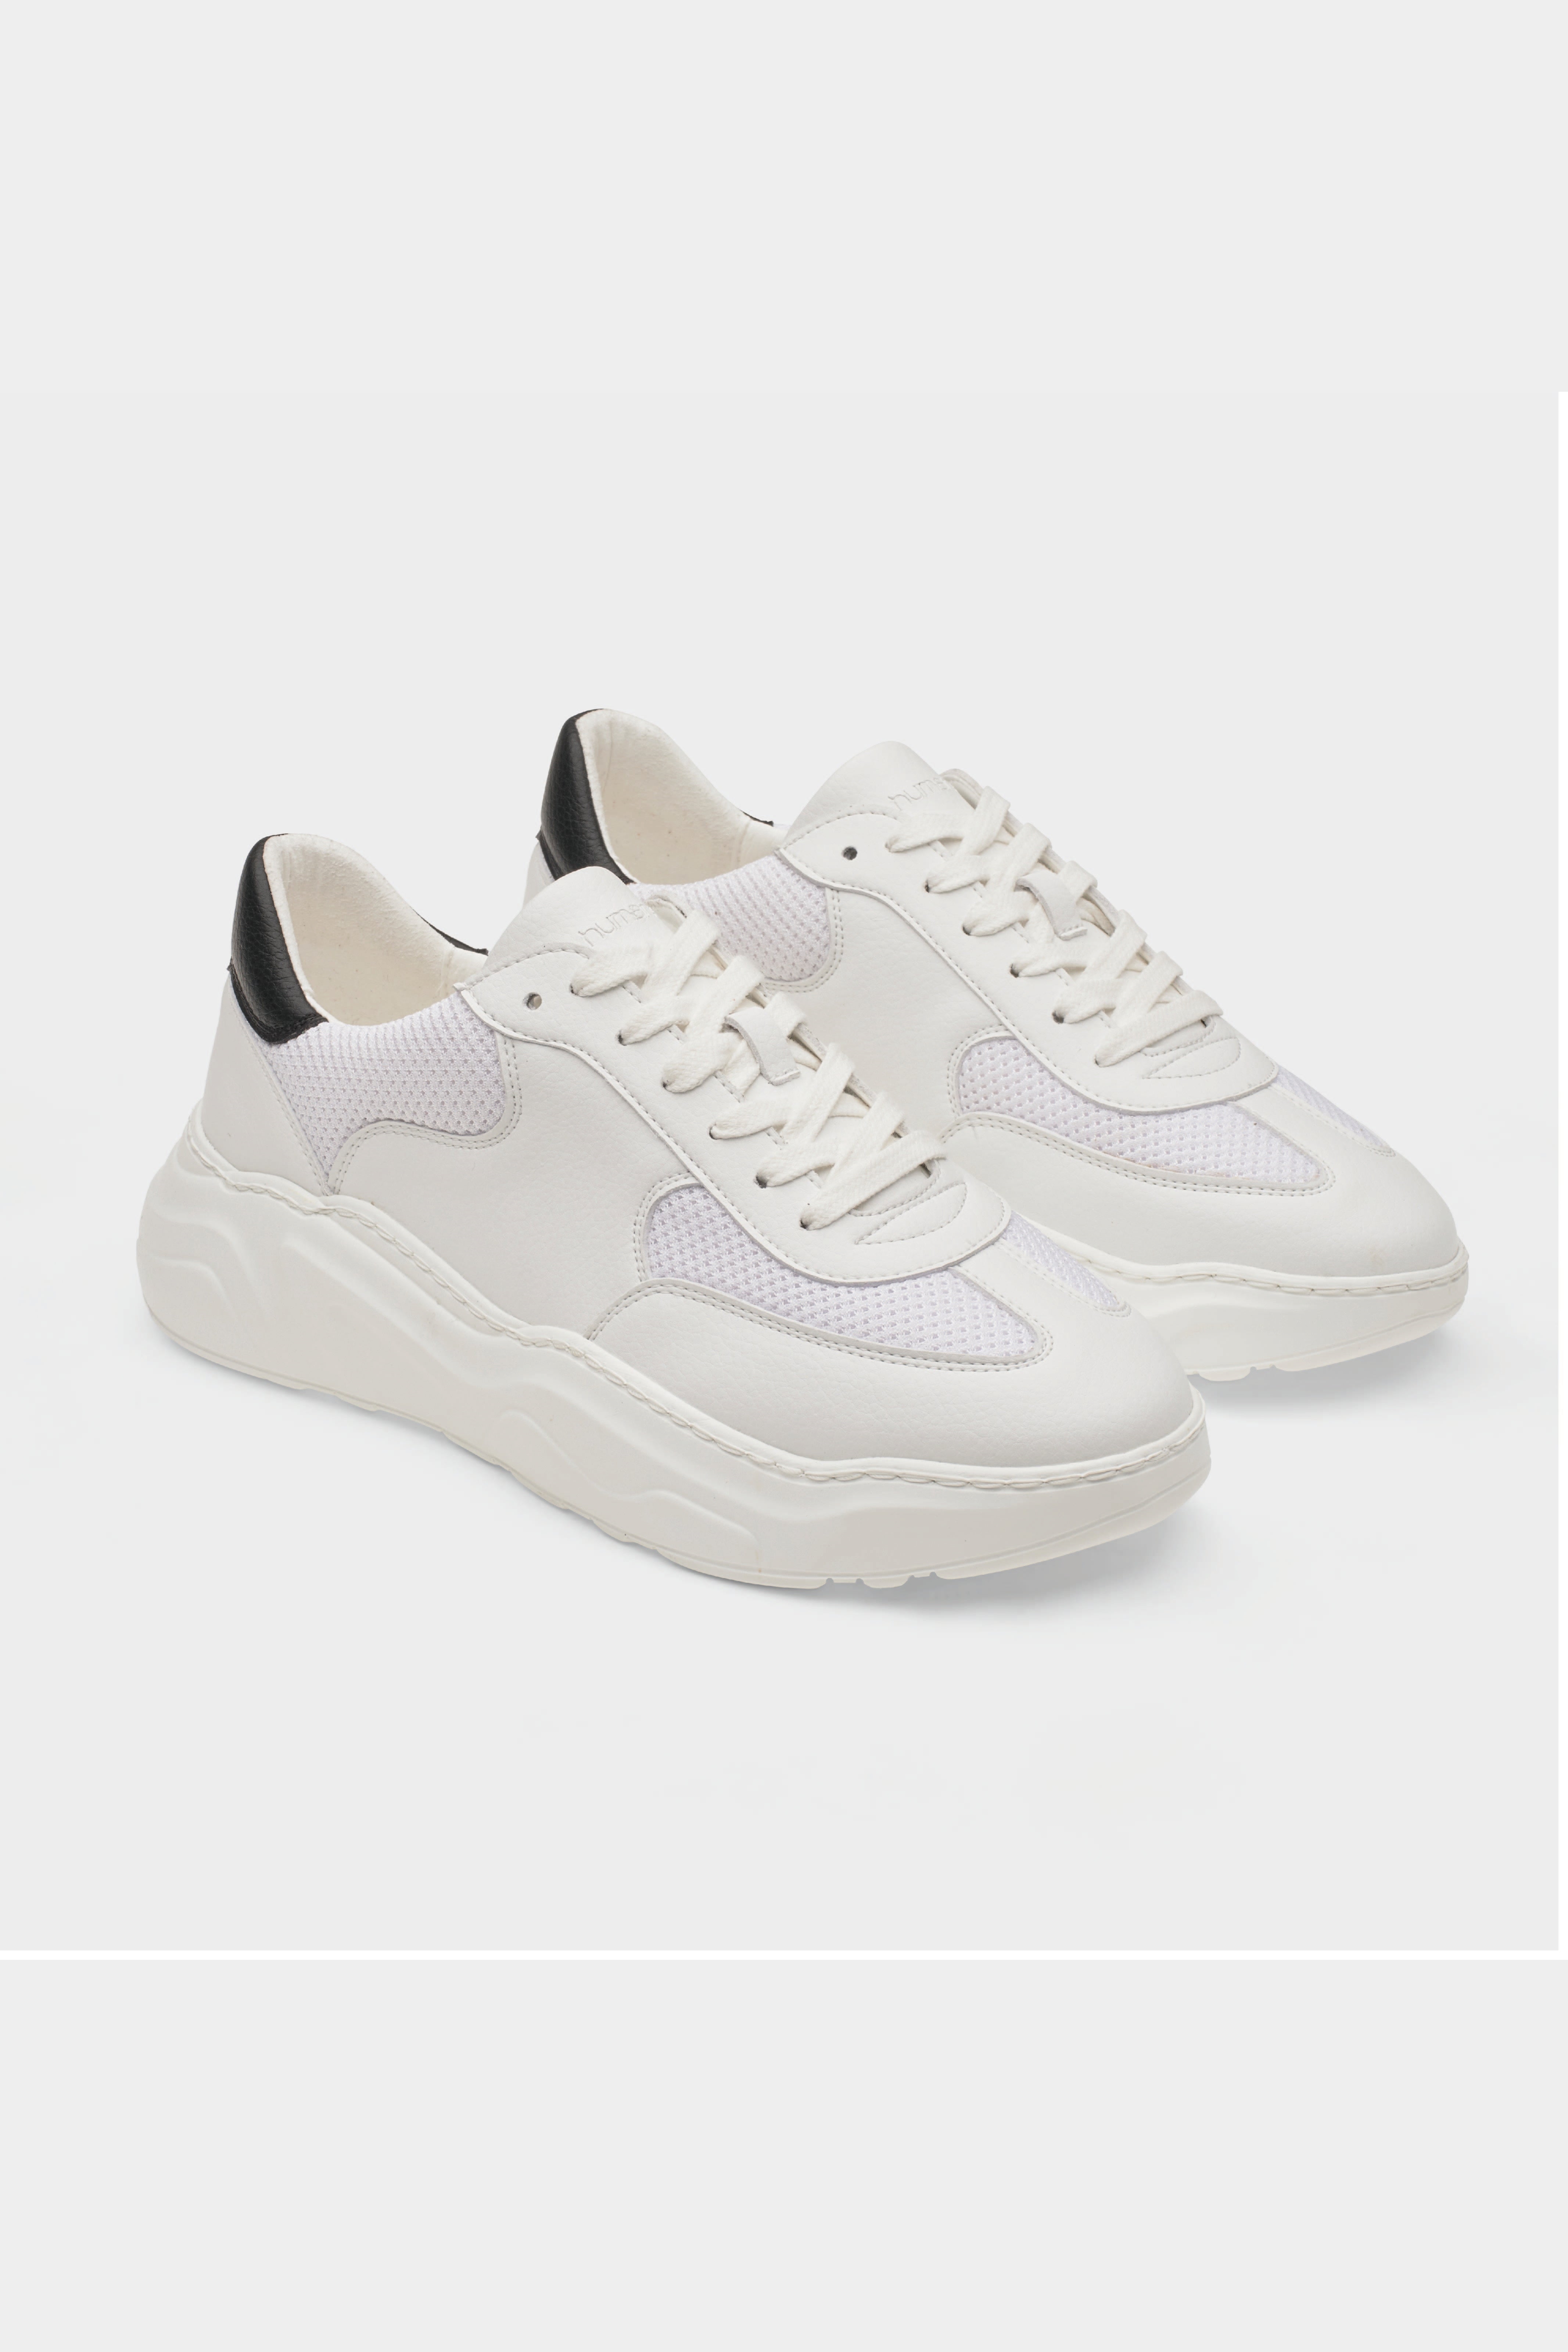 Sneaker Evolution V2 White